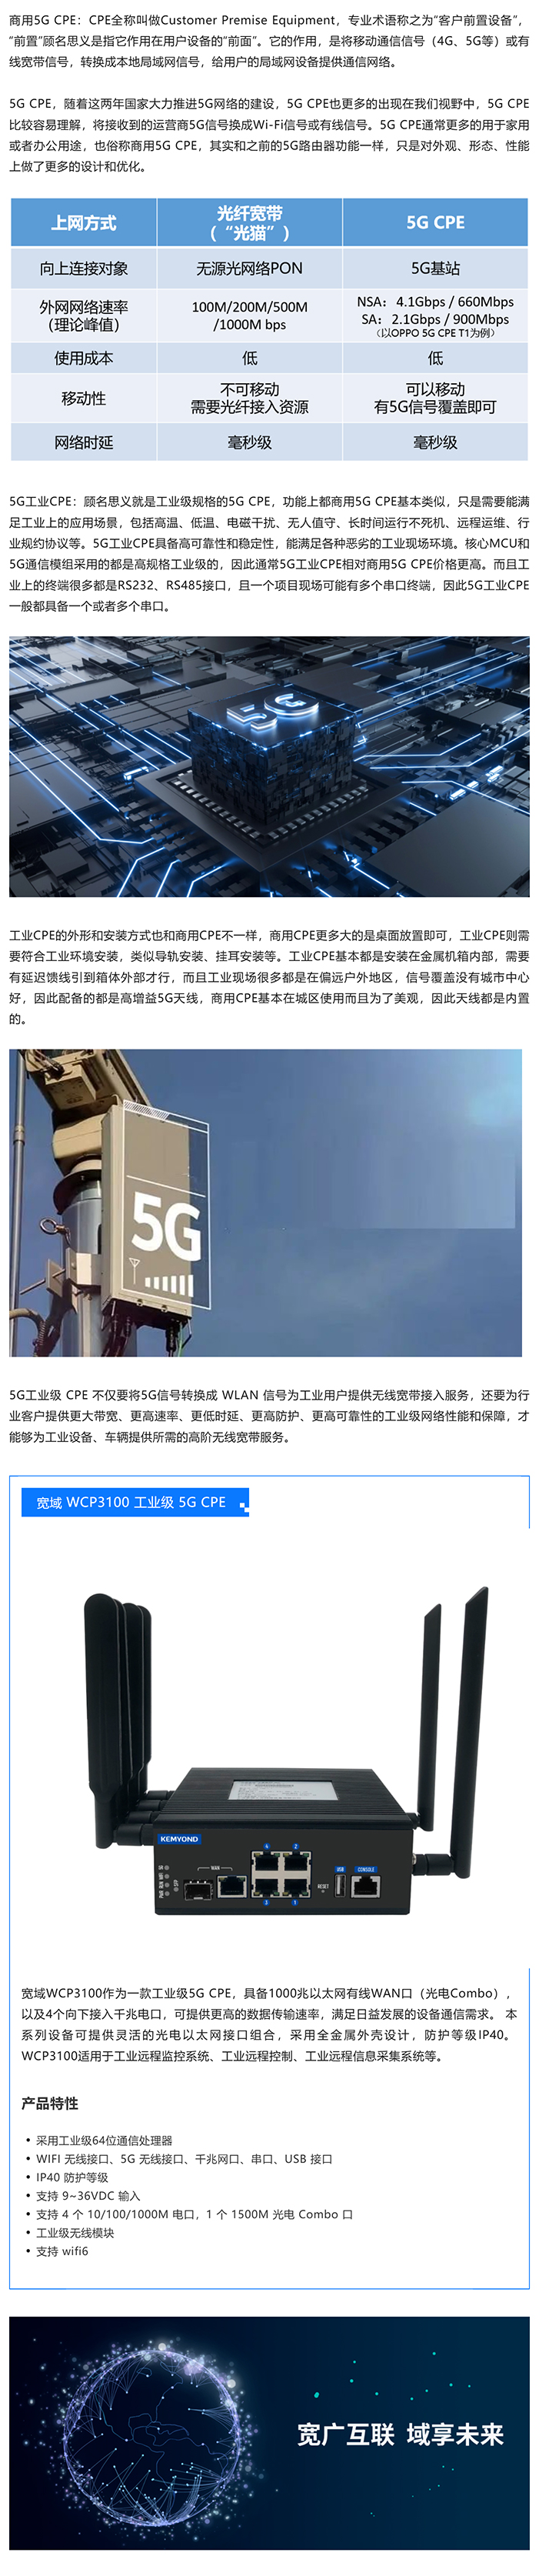 工业级5G CPE和商用5G CPE的区别_美编助手.jpg